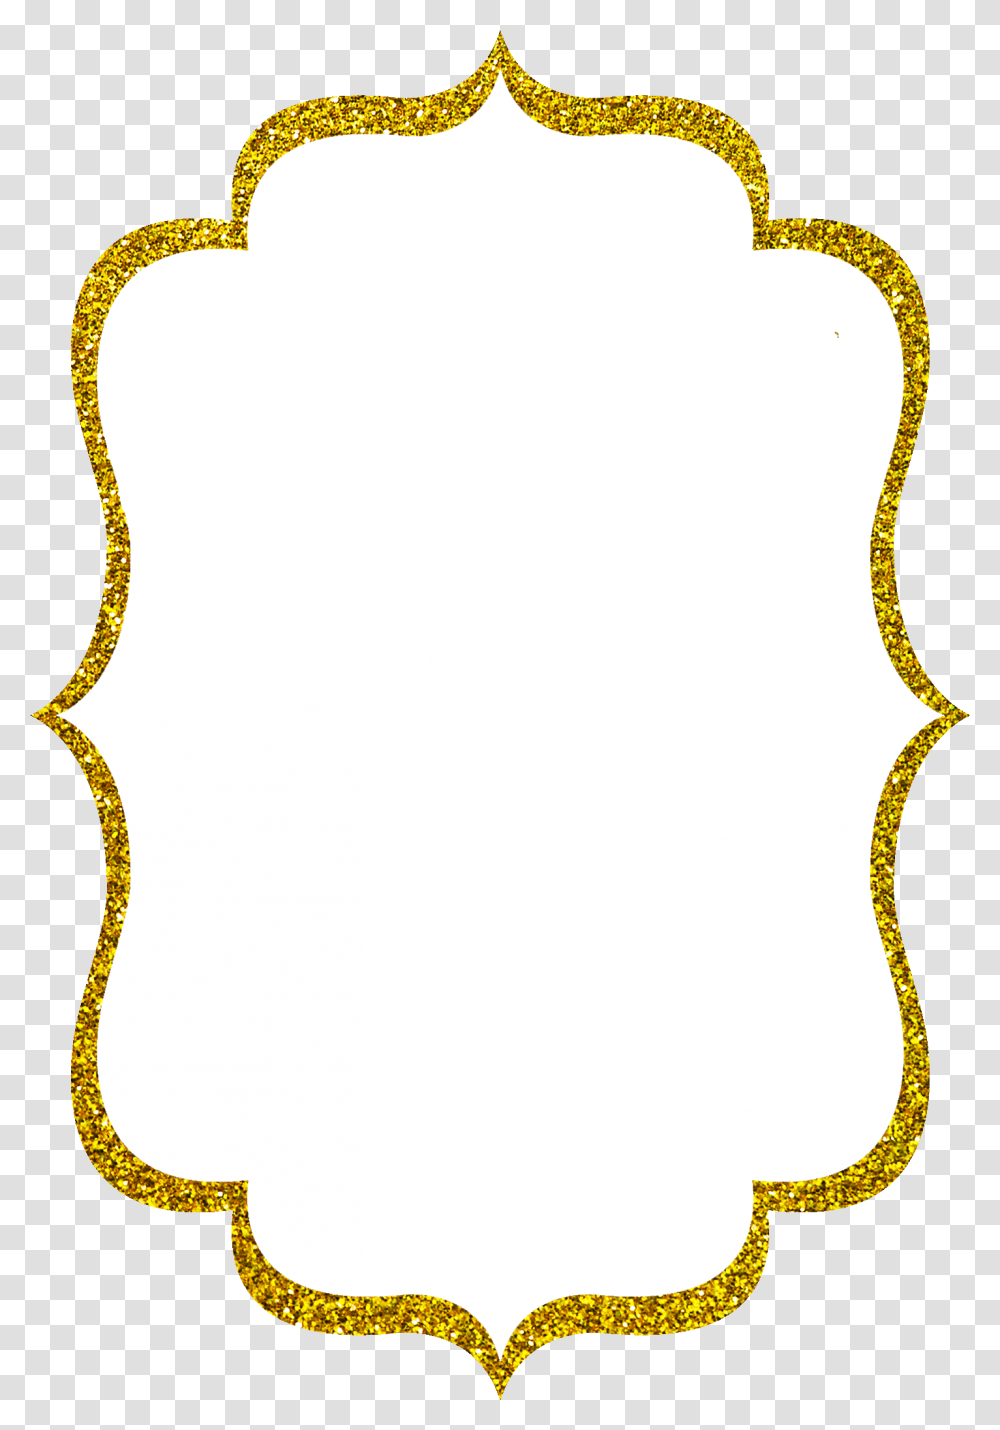 Gold Glitter Border Gold Glitter Border, Pattern, Text Transparent Png